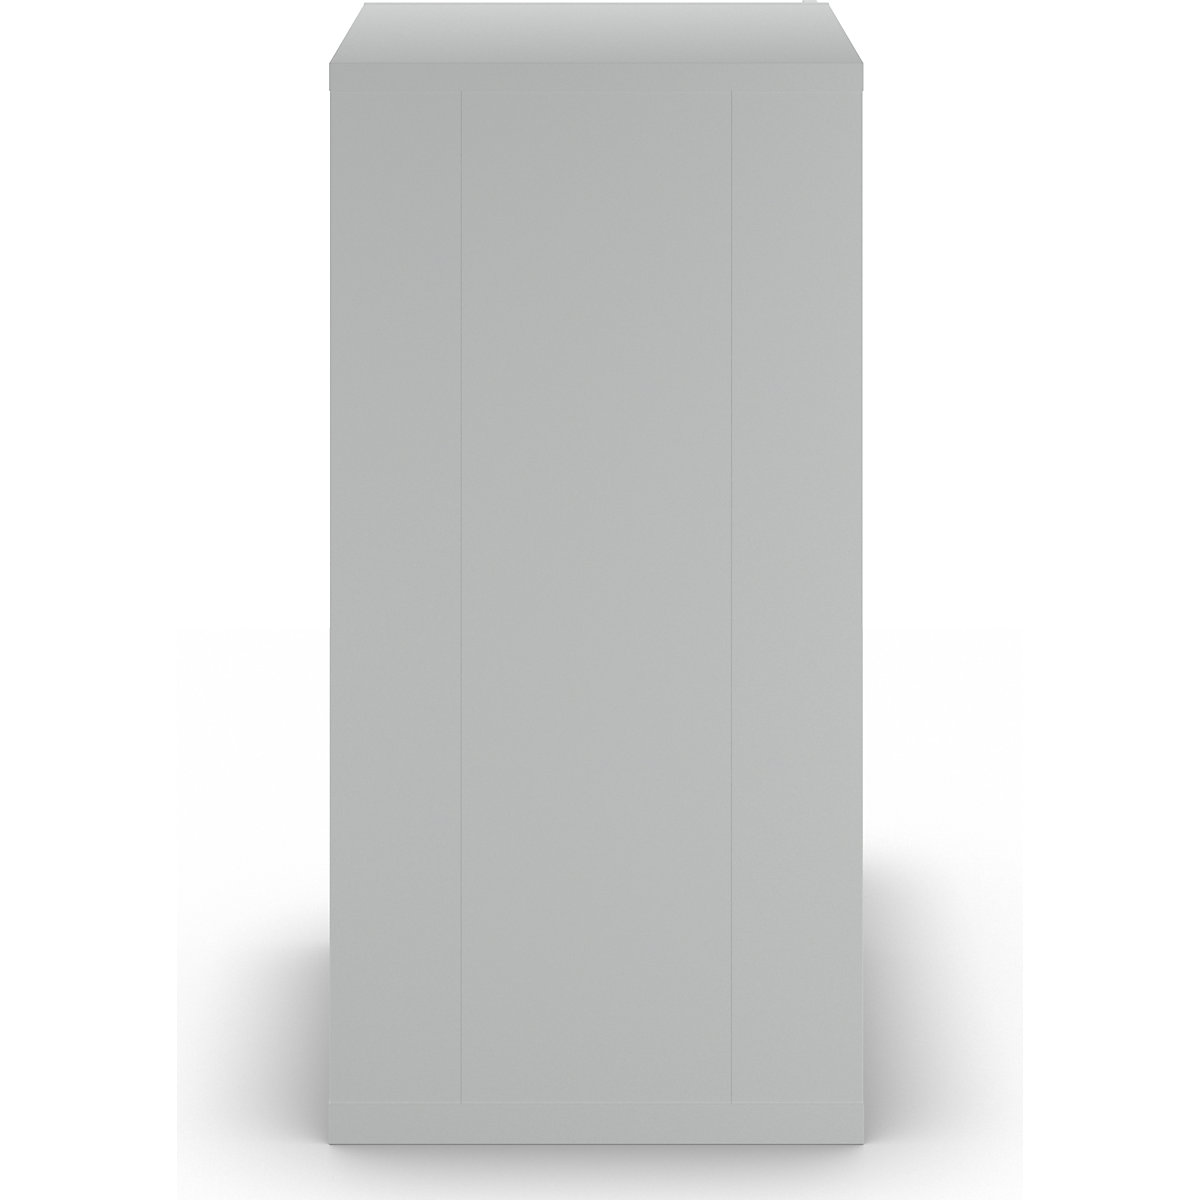 Zásuvková skříň s otočnými dveřmi – LISTA (Obrázek výrobku 6)-5